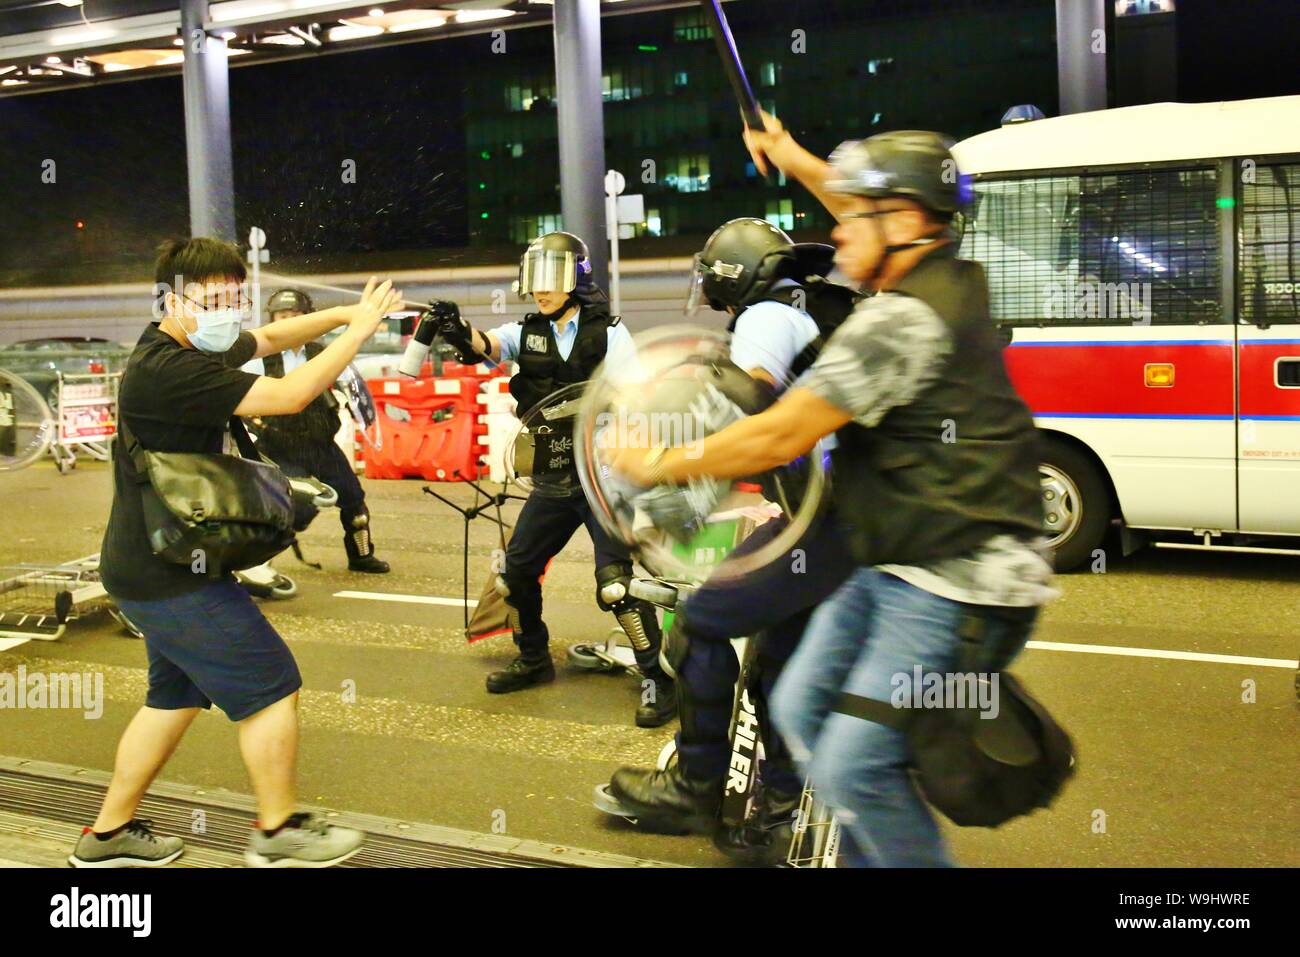 Hong Kong. 13 Aug, 2019. Los disturbios estallan en el Aeropuerto Internacional de Hong Kong, cuando la policía intentan rescatar a dos hombres chinos que son sospechosos de ser agentes encubiertos de la China continental y, por tanto, retenidos por los manifestantes en el interior del aeropuerto. Los enfrentamientos estallan a media noche, spray de pimienta se usa y unos pocos manifestantes son arrestados. Crédito: Gonzales Foto/Alamy Live News Foto de stock